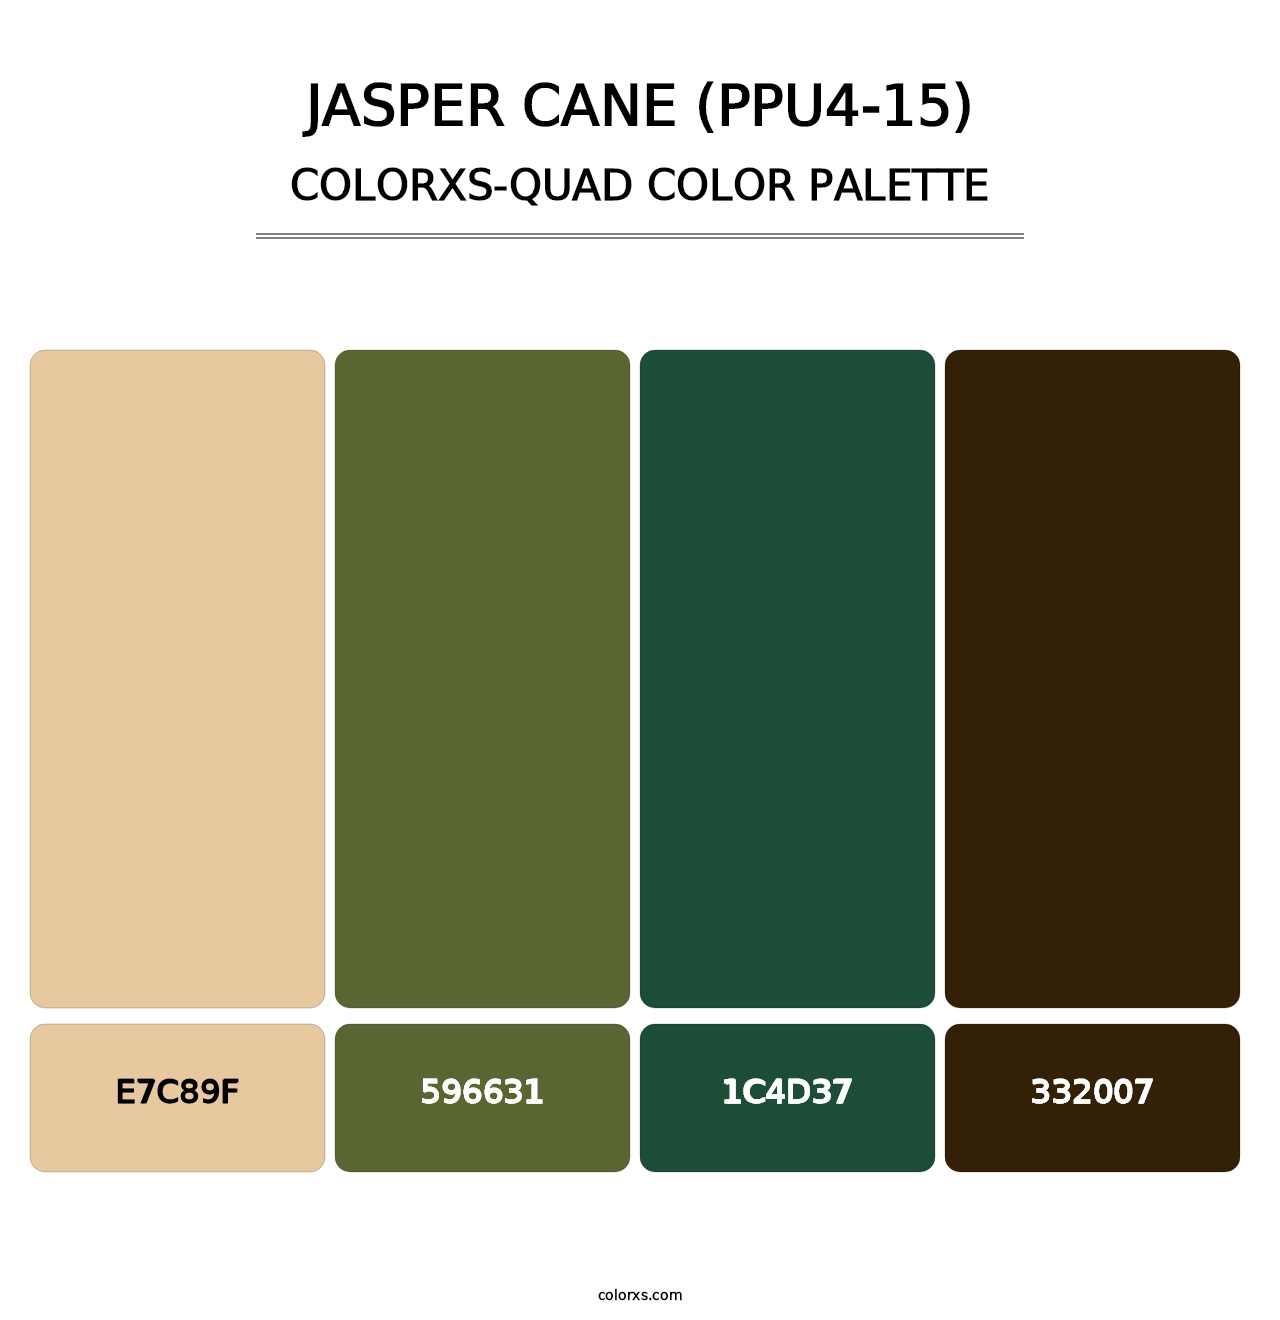 Jasper Cane (PPU4-15) - Colorxs Quad Palette